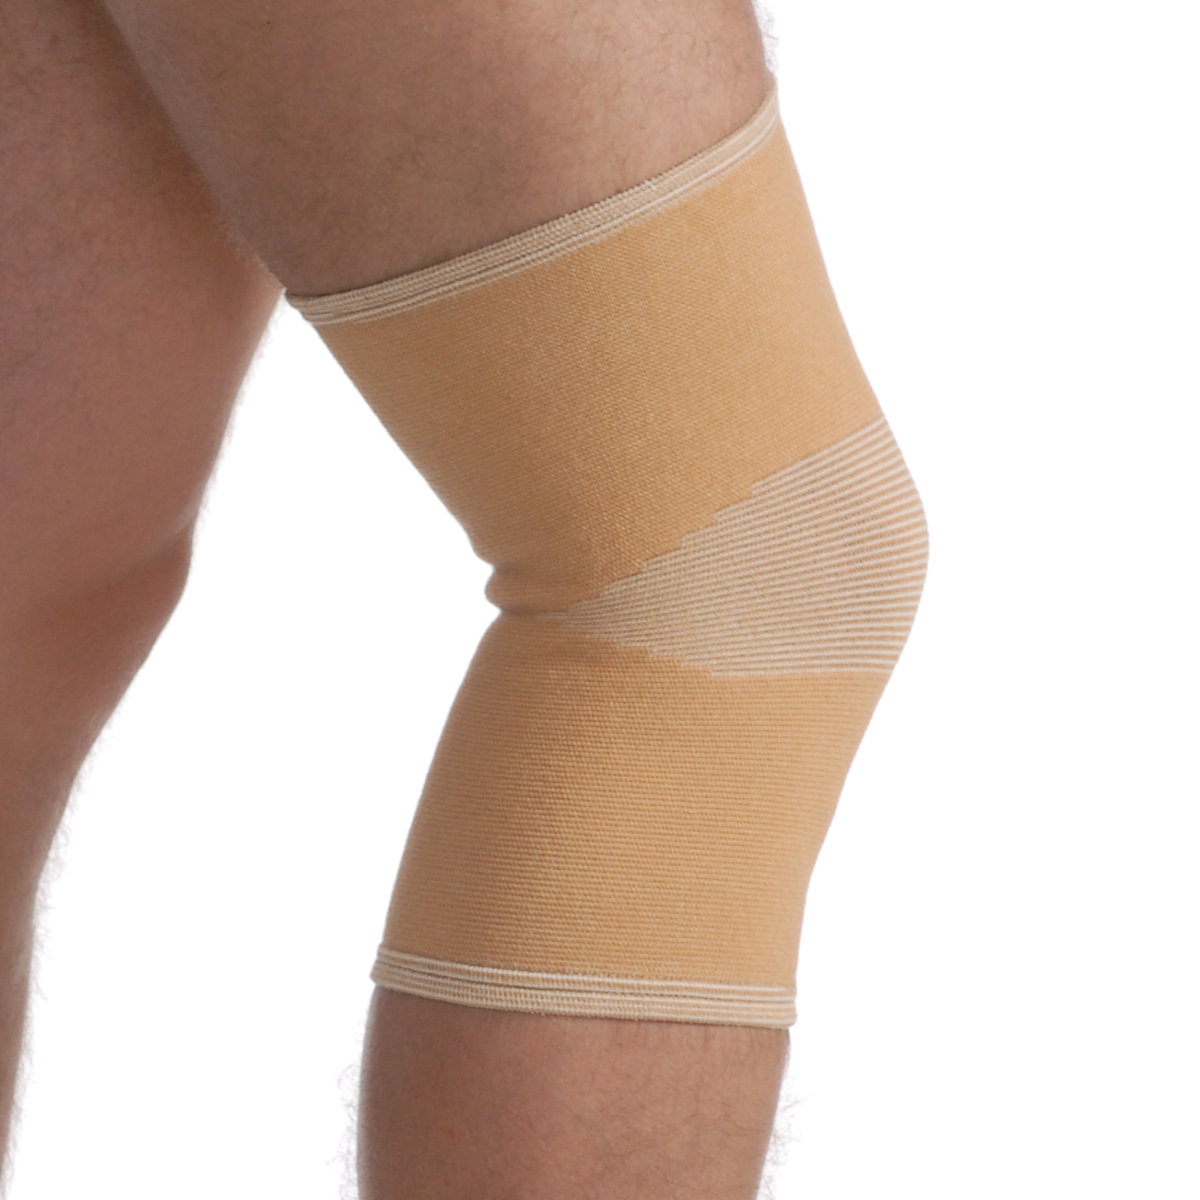 Bandáž kolene elastická béžová, Medtextile, 6002 vel. S